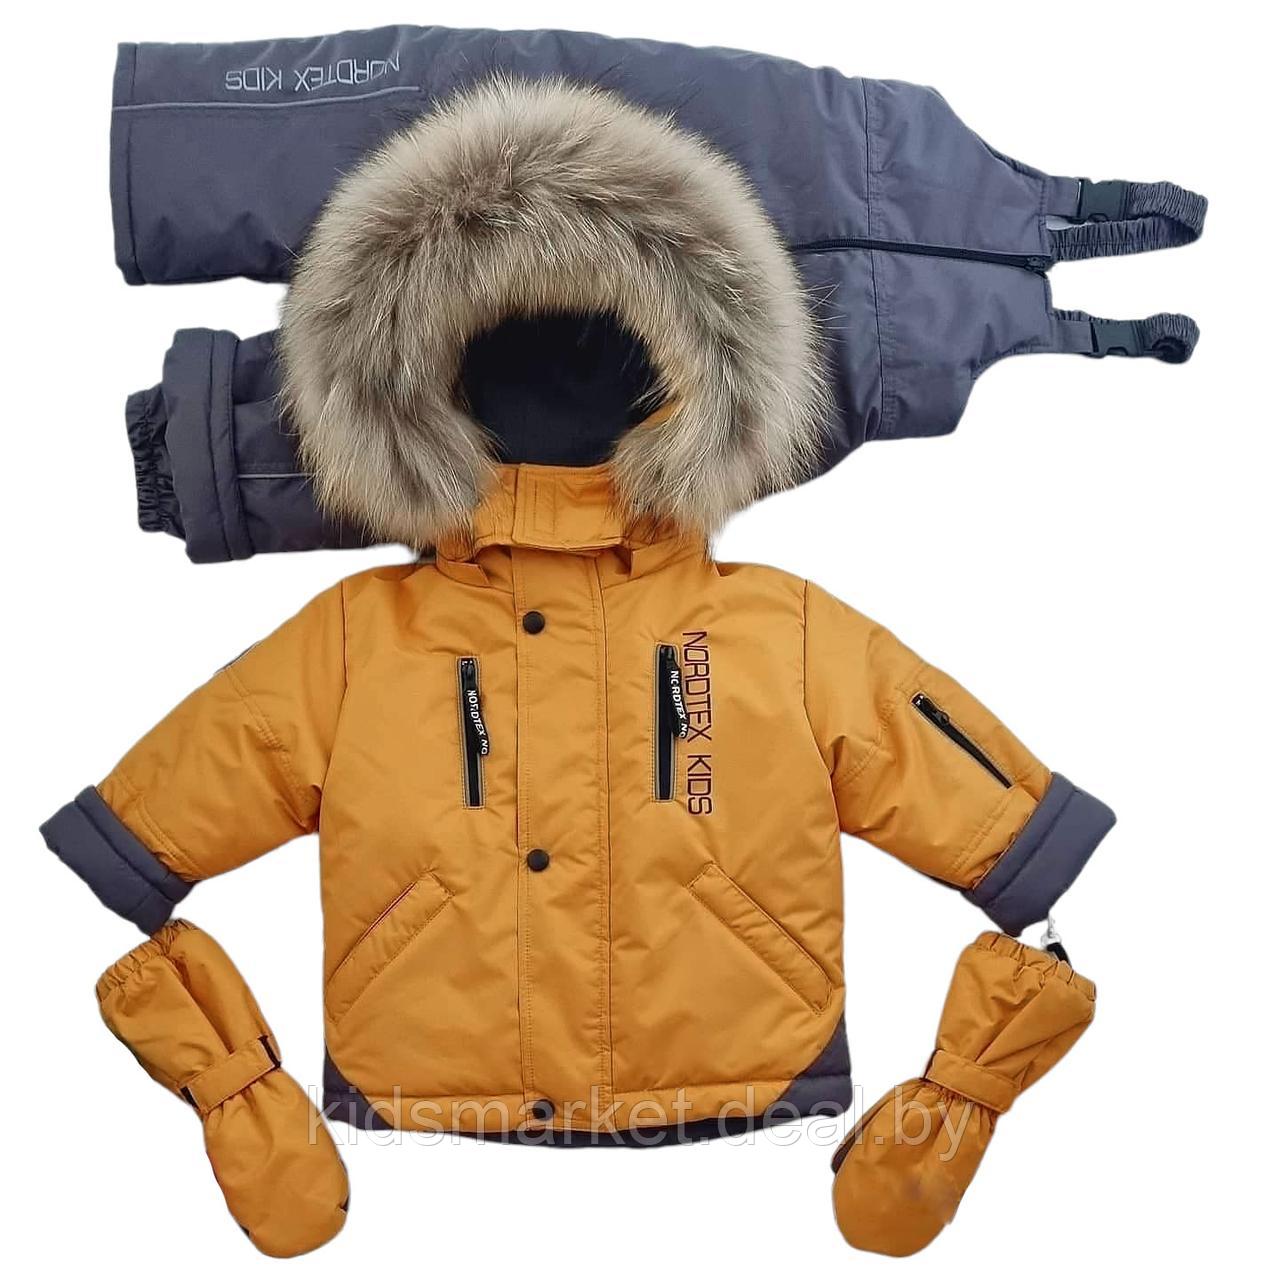 Детский зимний костюм (куртка + комбинезон) Nordtex Kids мембрана кэмел (Размеры: 86, 92)